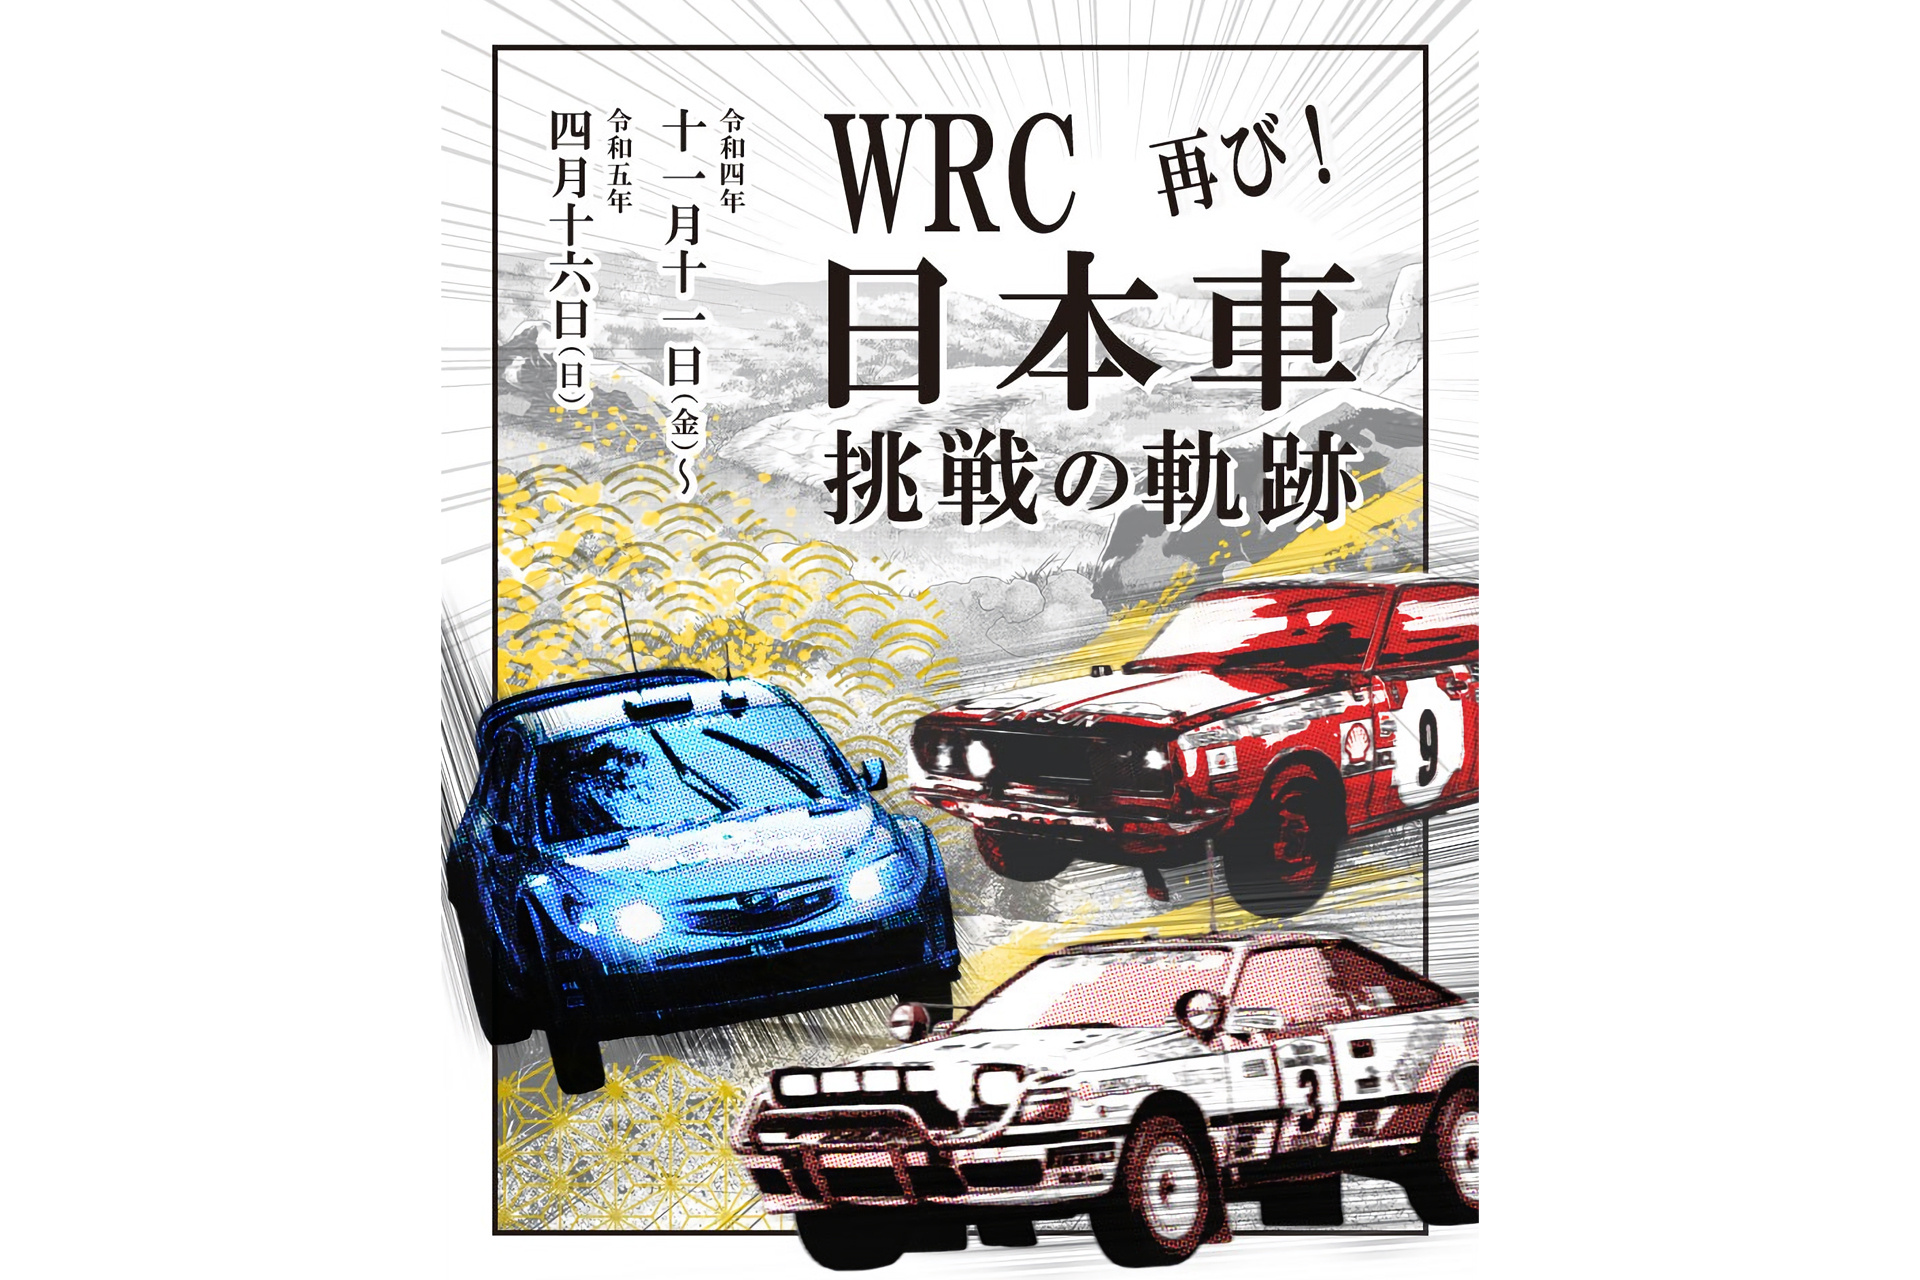 トヨタ博物館、昨年に引き続き企画展「WRC 日本車挑戦の軌跡」開催 